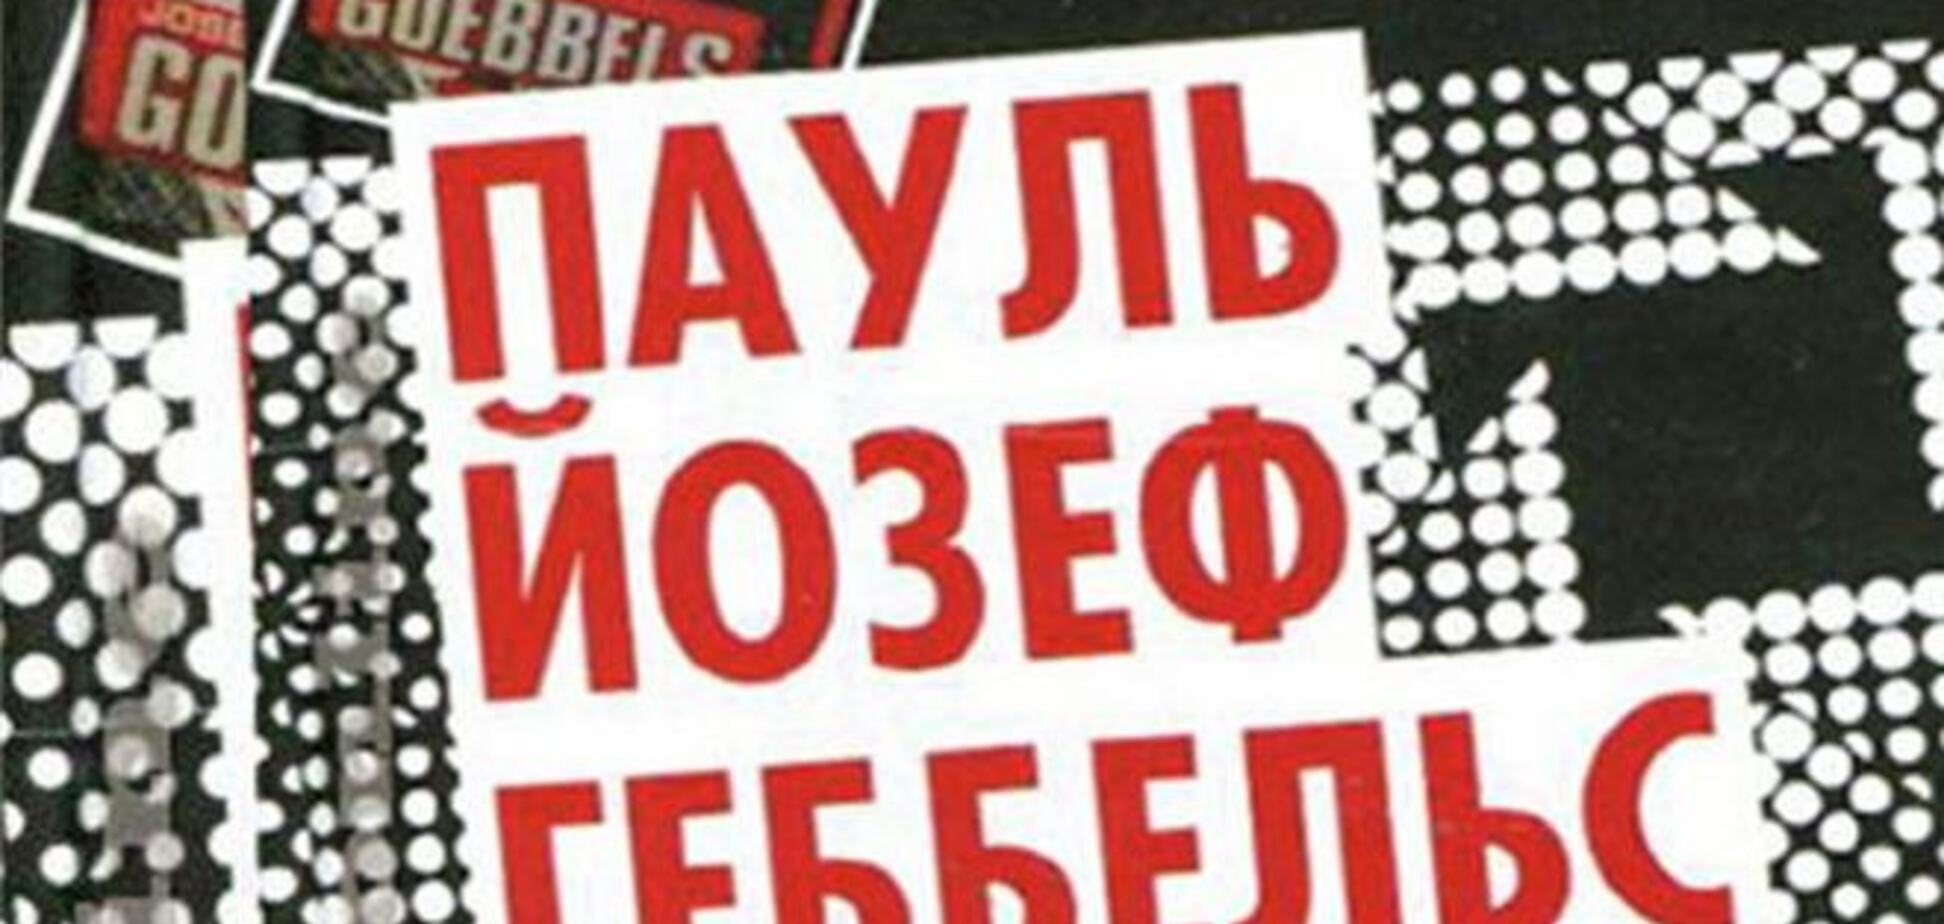 Прокуратура Москви просить суд визнати книгу Геббельса екстремістської